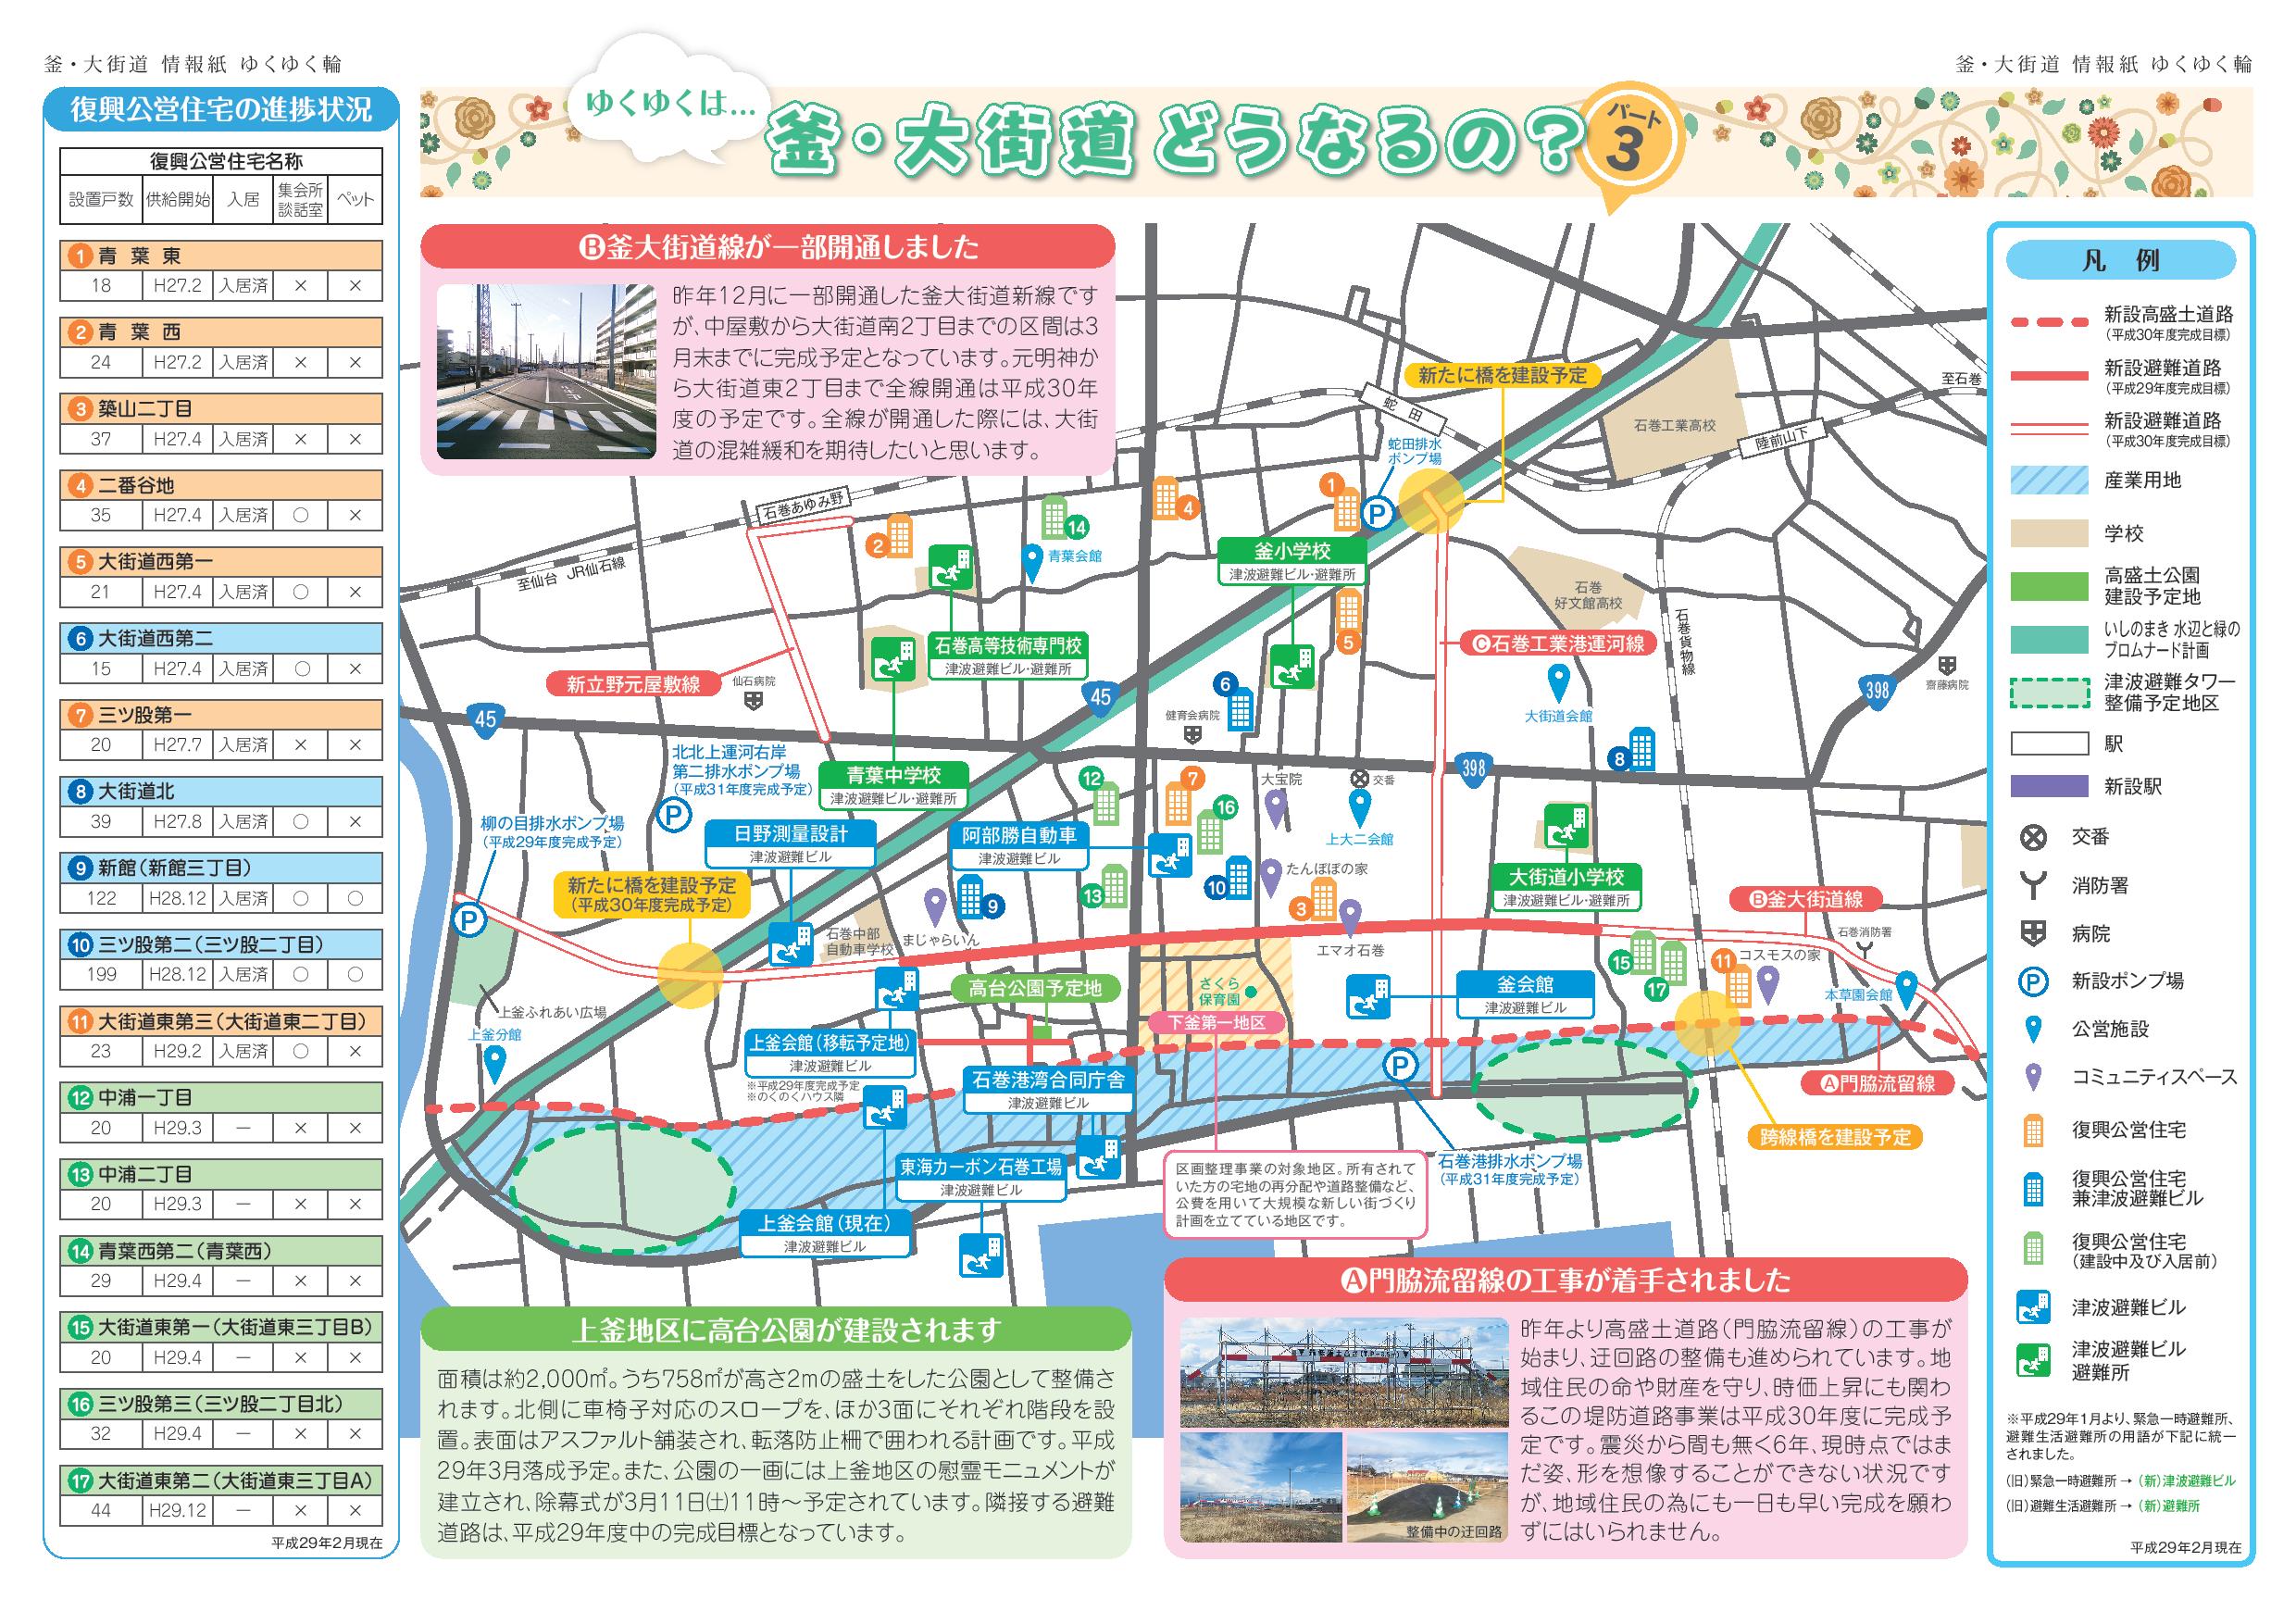 石巻市釜・大街道地区の復興状況マップ